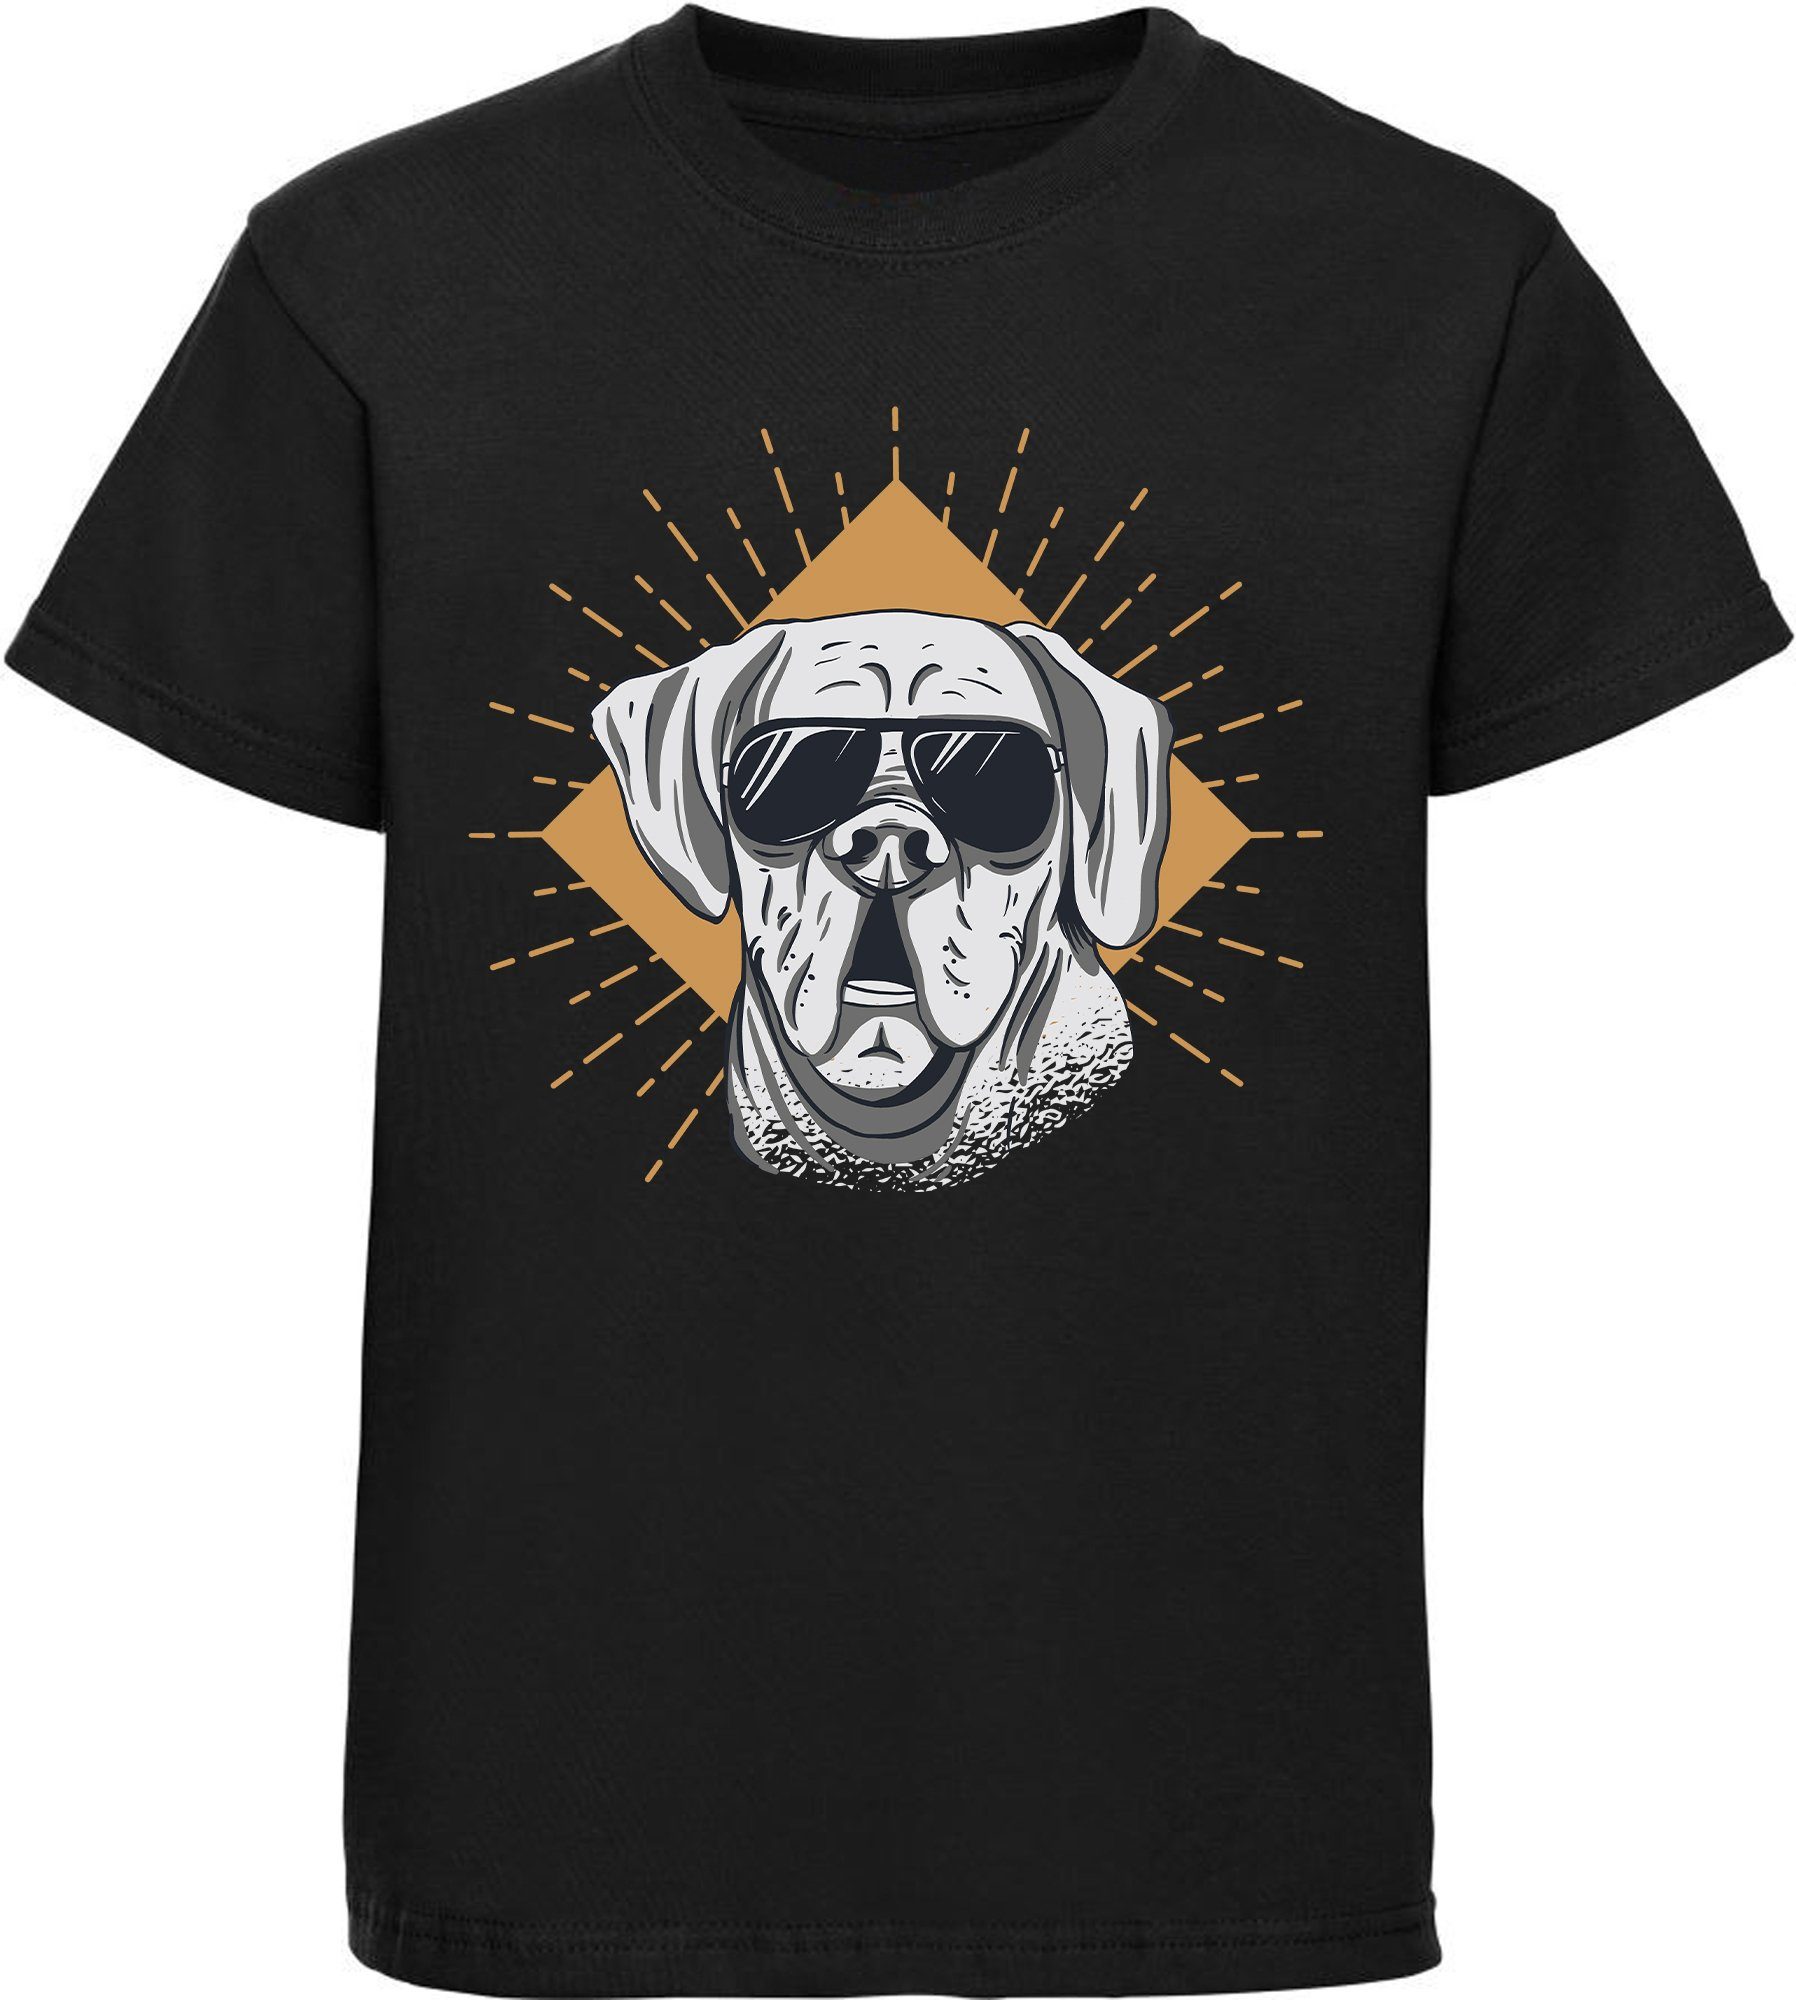 MyDesign24 Print-Shirt bedrucktes Kinder Hunde T-Shirt - Cooler Hund mit Sonnenbrille Baumwollshirt mit Aufdruck, i224 schwarz